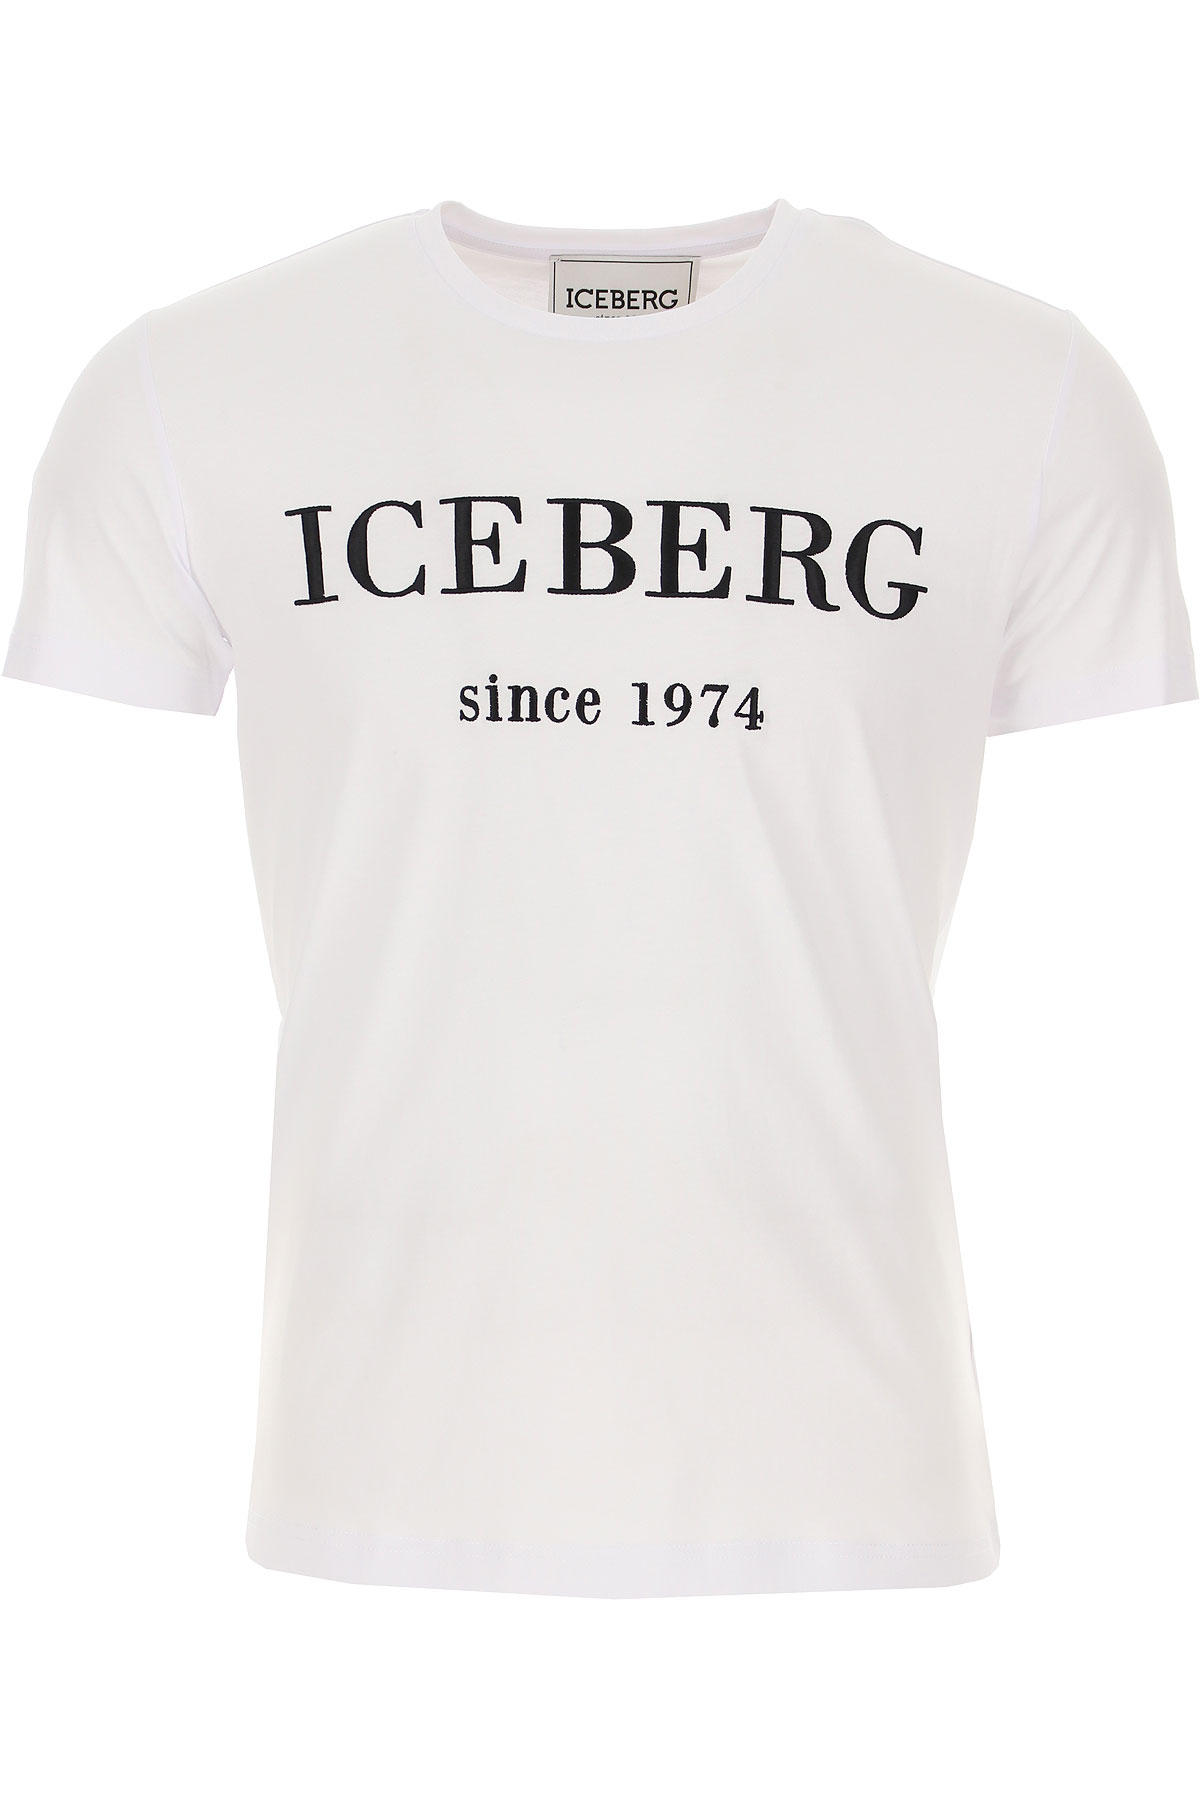 iceberg clothing